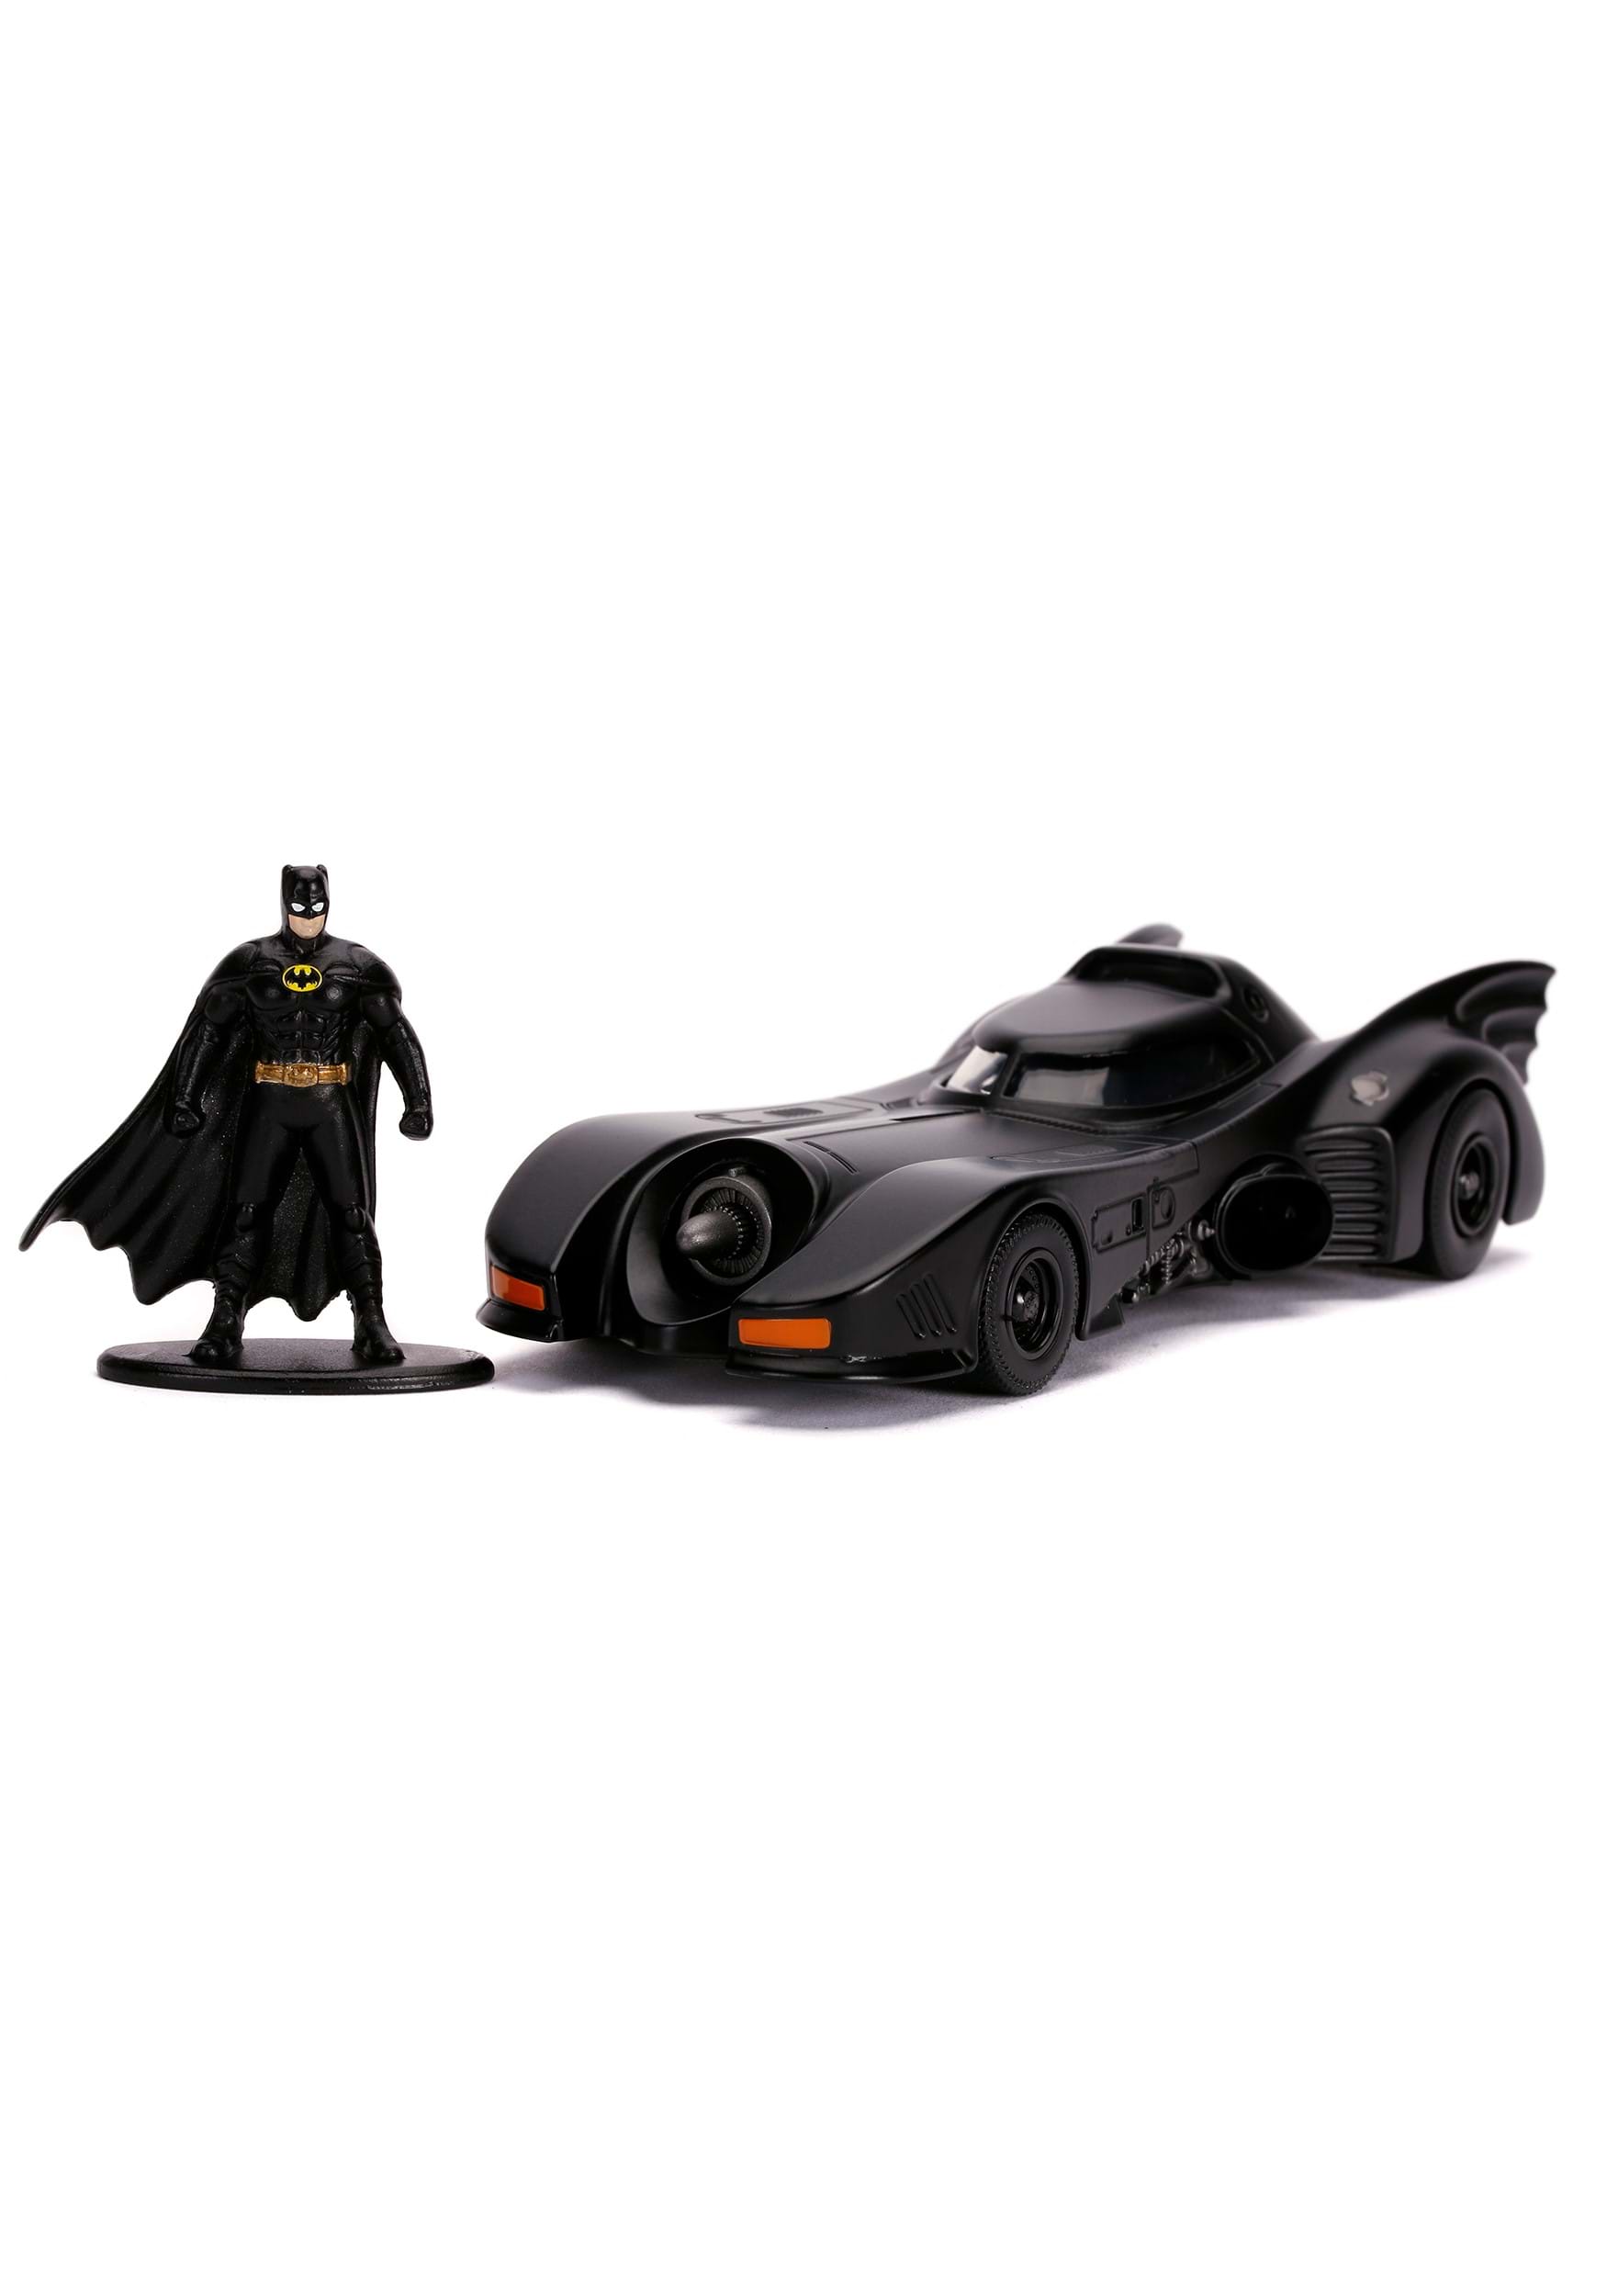 1:32 Scale Batman 1989 Movie Batmobile w/ Batman Figure